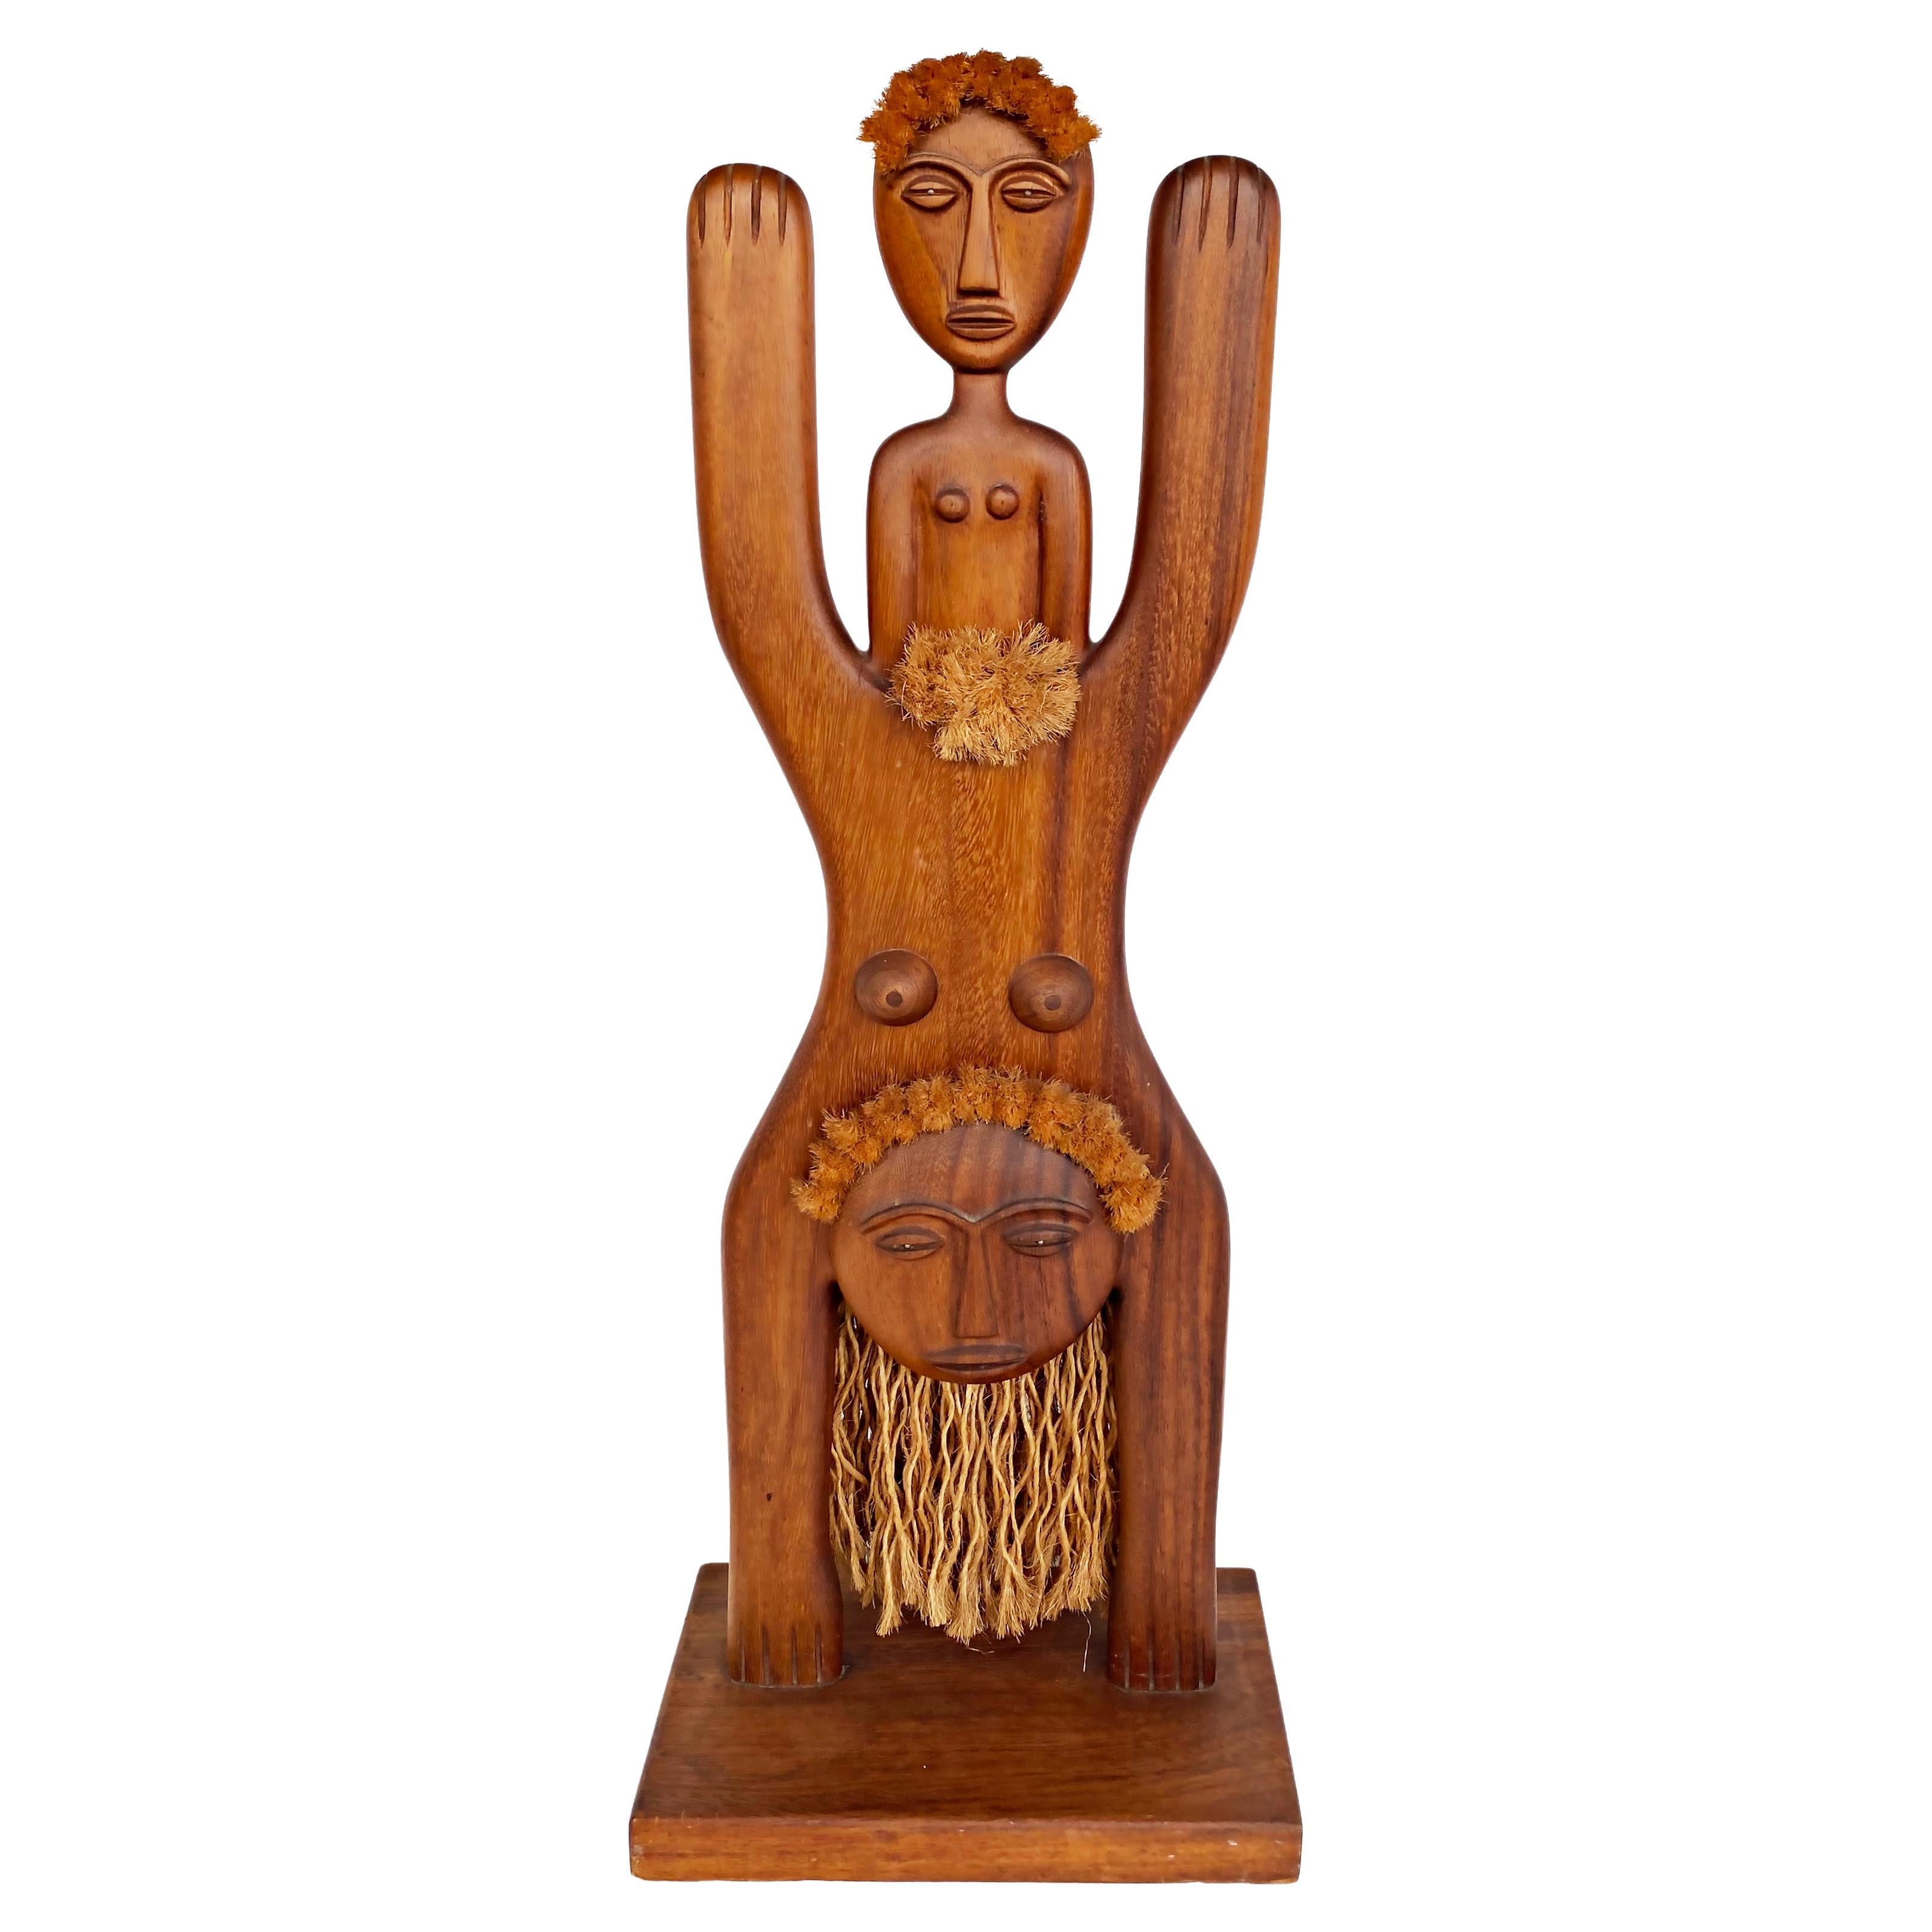  Geschnitzte Fertility-Skulptur aus Holz von Edwin Scheier, signiert, 1978